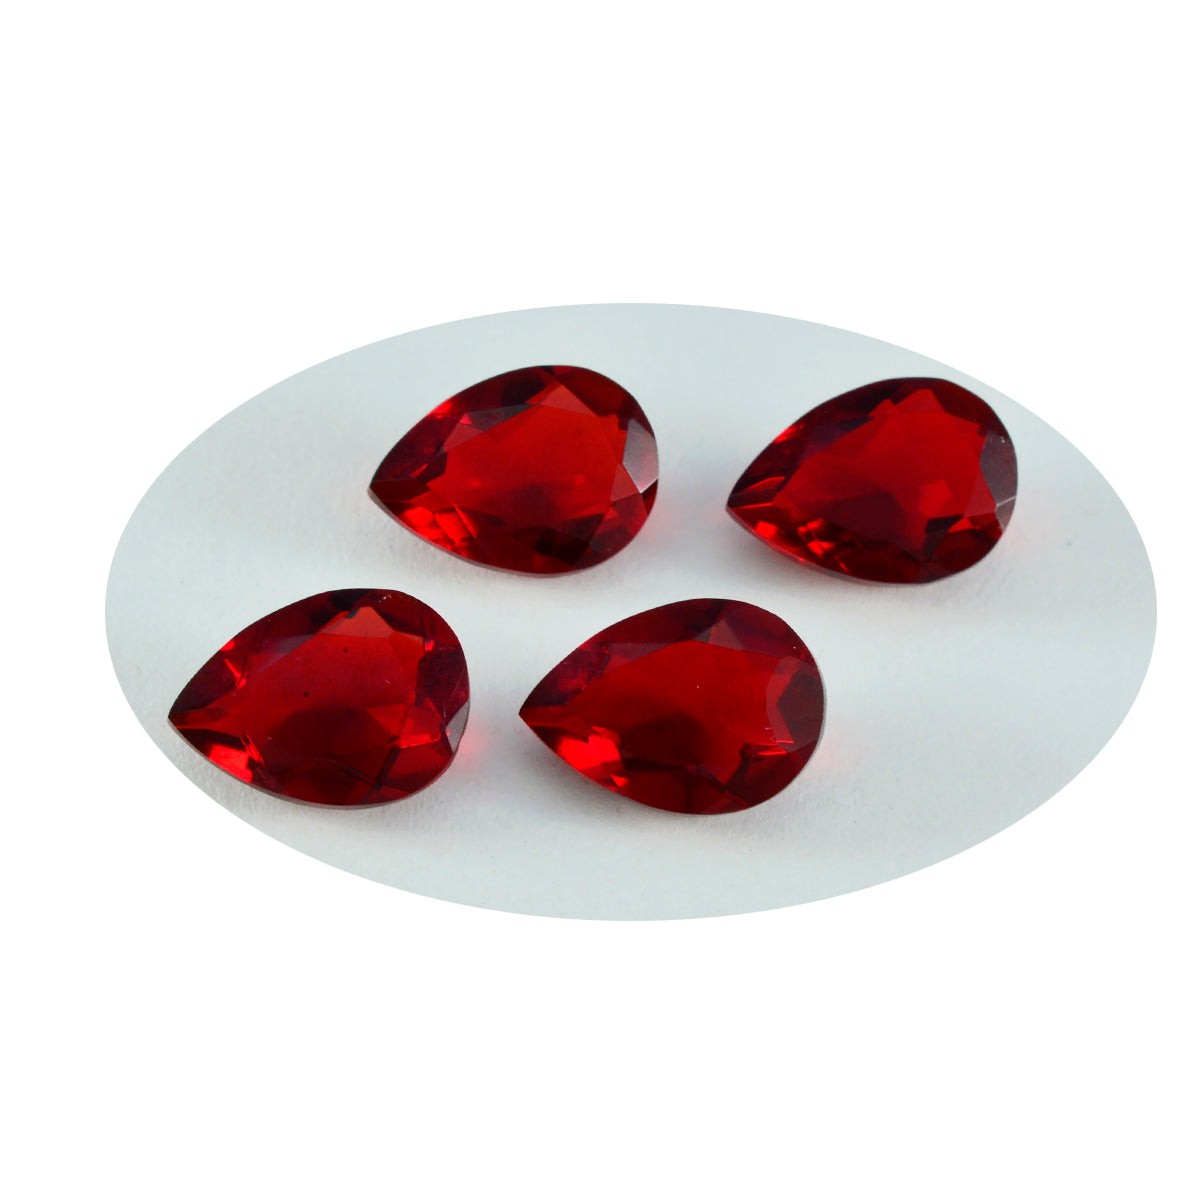 riyogems 1 шт., красные рубины с цирконием, граненые 8x12 мм, грушевидной формы, милые качественные свободные драгоценные камни